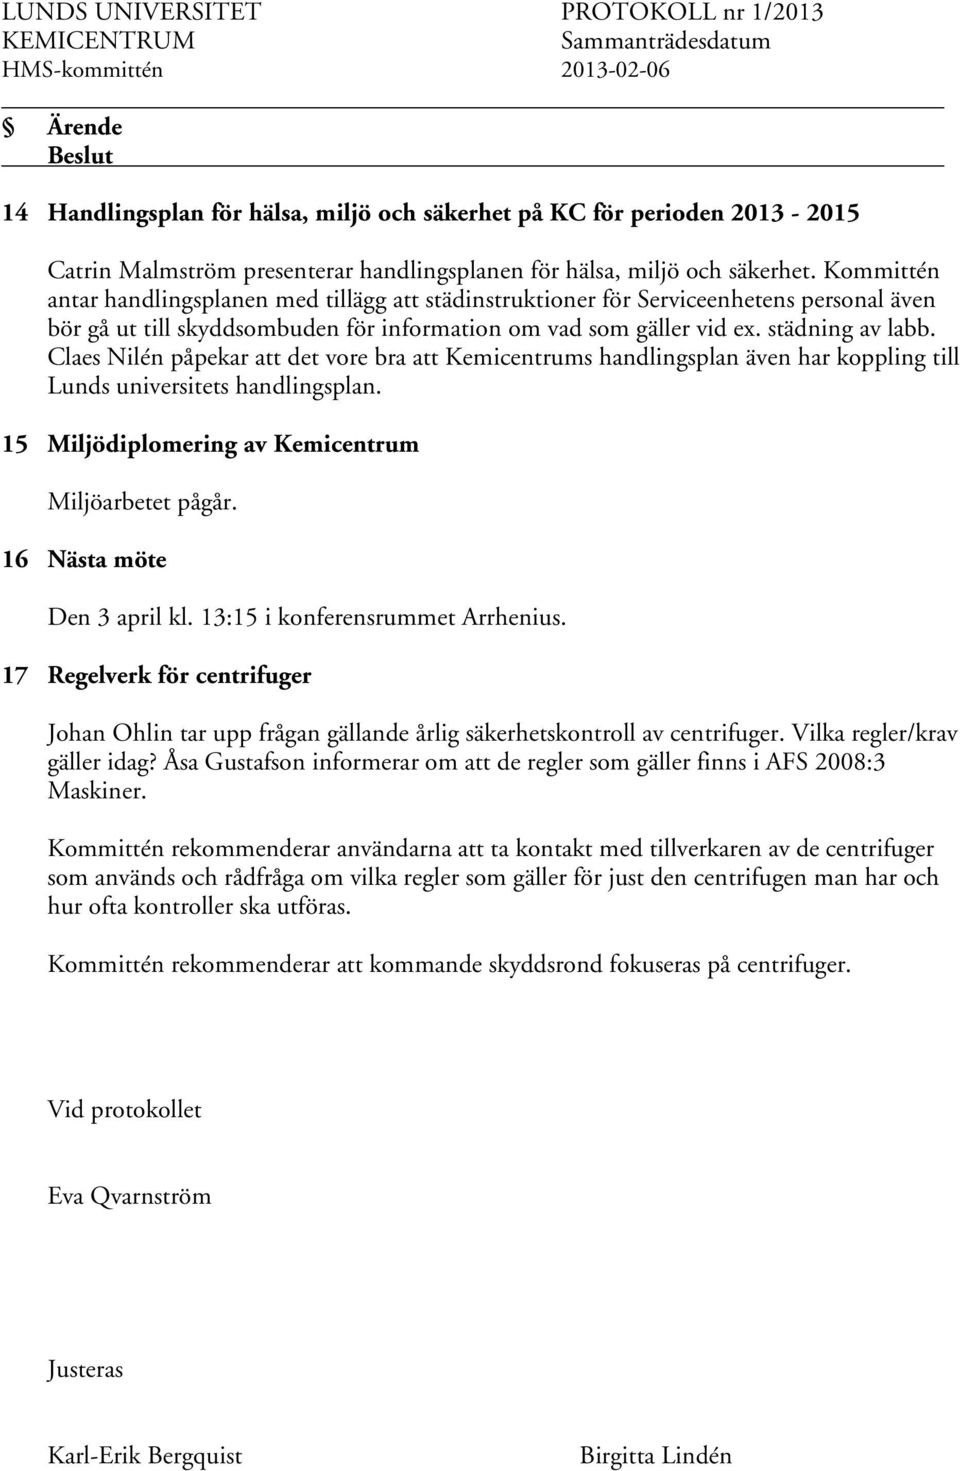 Claes Nilén påpekar att det vore bra att Kemicentrums handlingsplan även har koppling till Lunds universitets handlingsplan. 15 Miljödiplomering av Kemicentrum Miljöarbetet pågår.